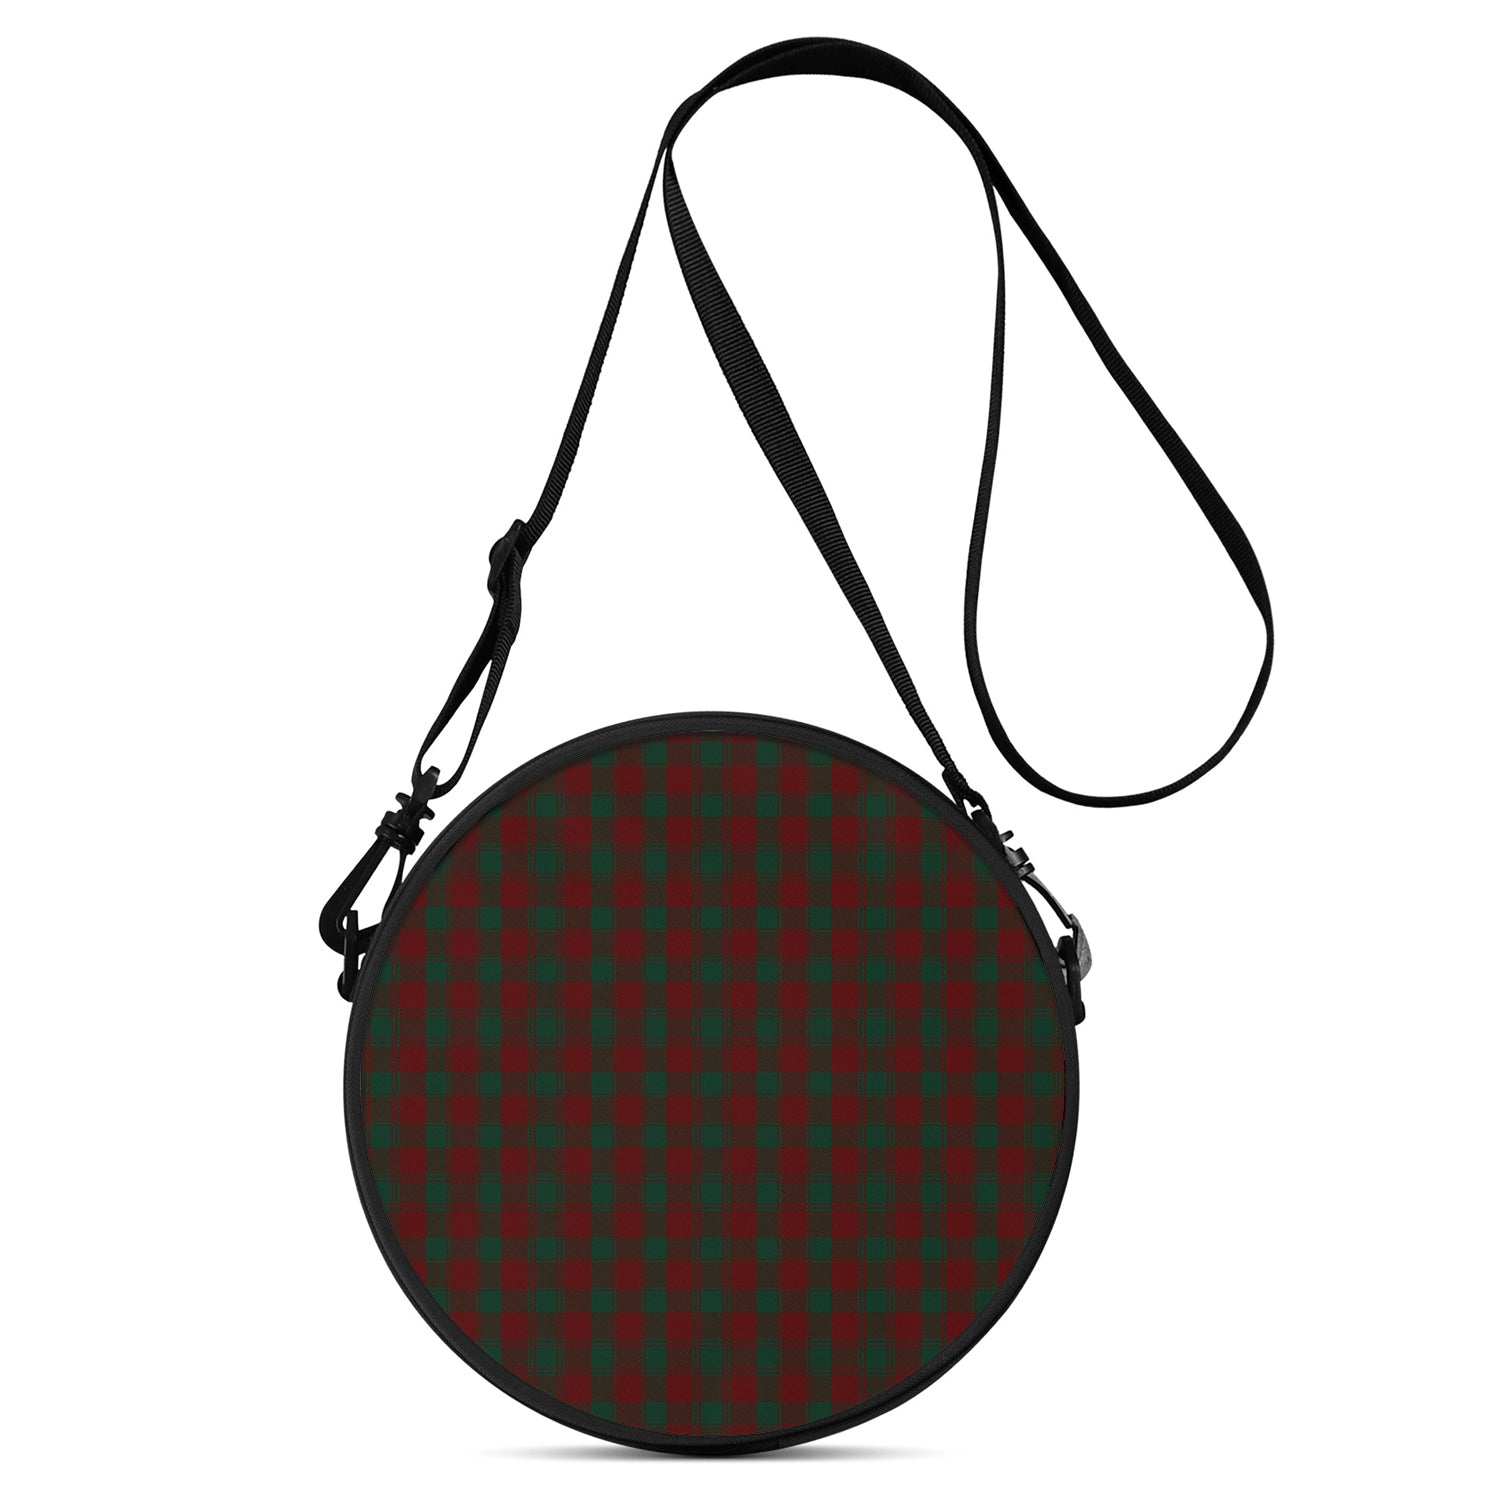 donachie-of-brockloch-tartan-round-satchel-bags